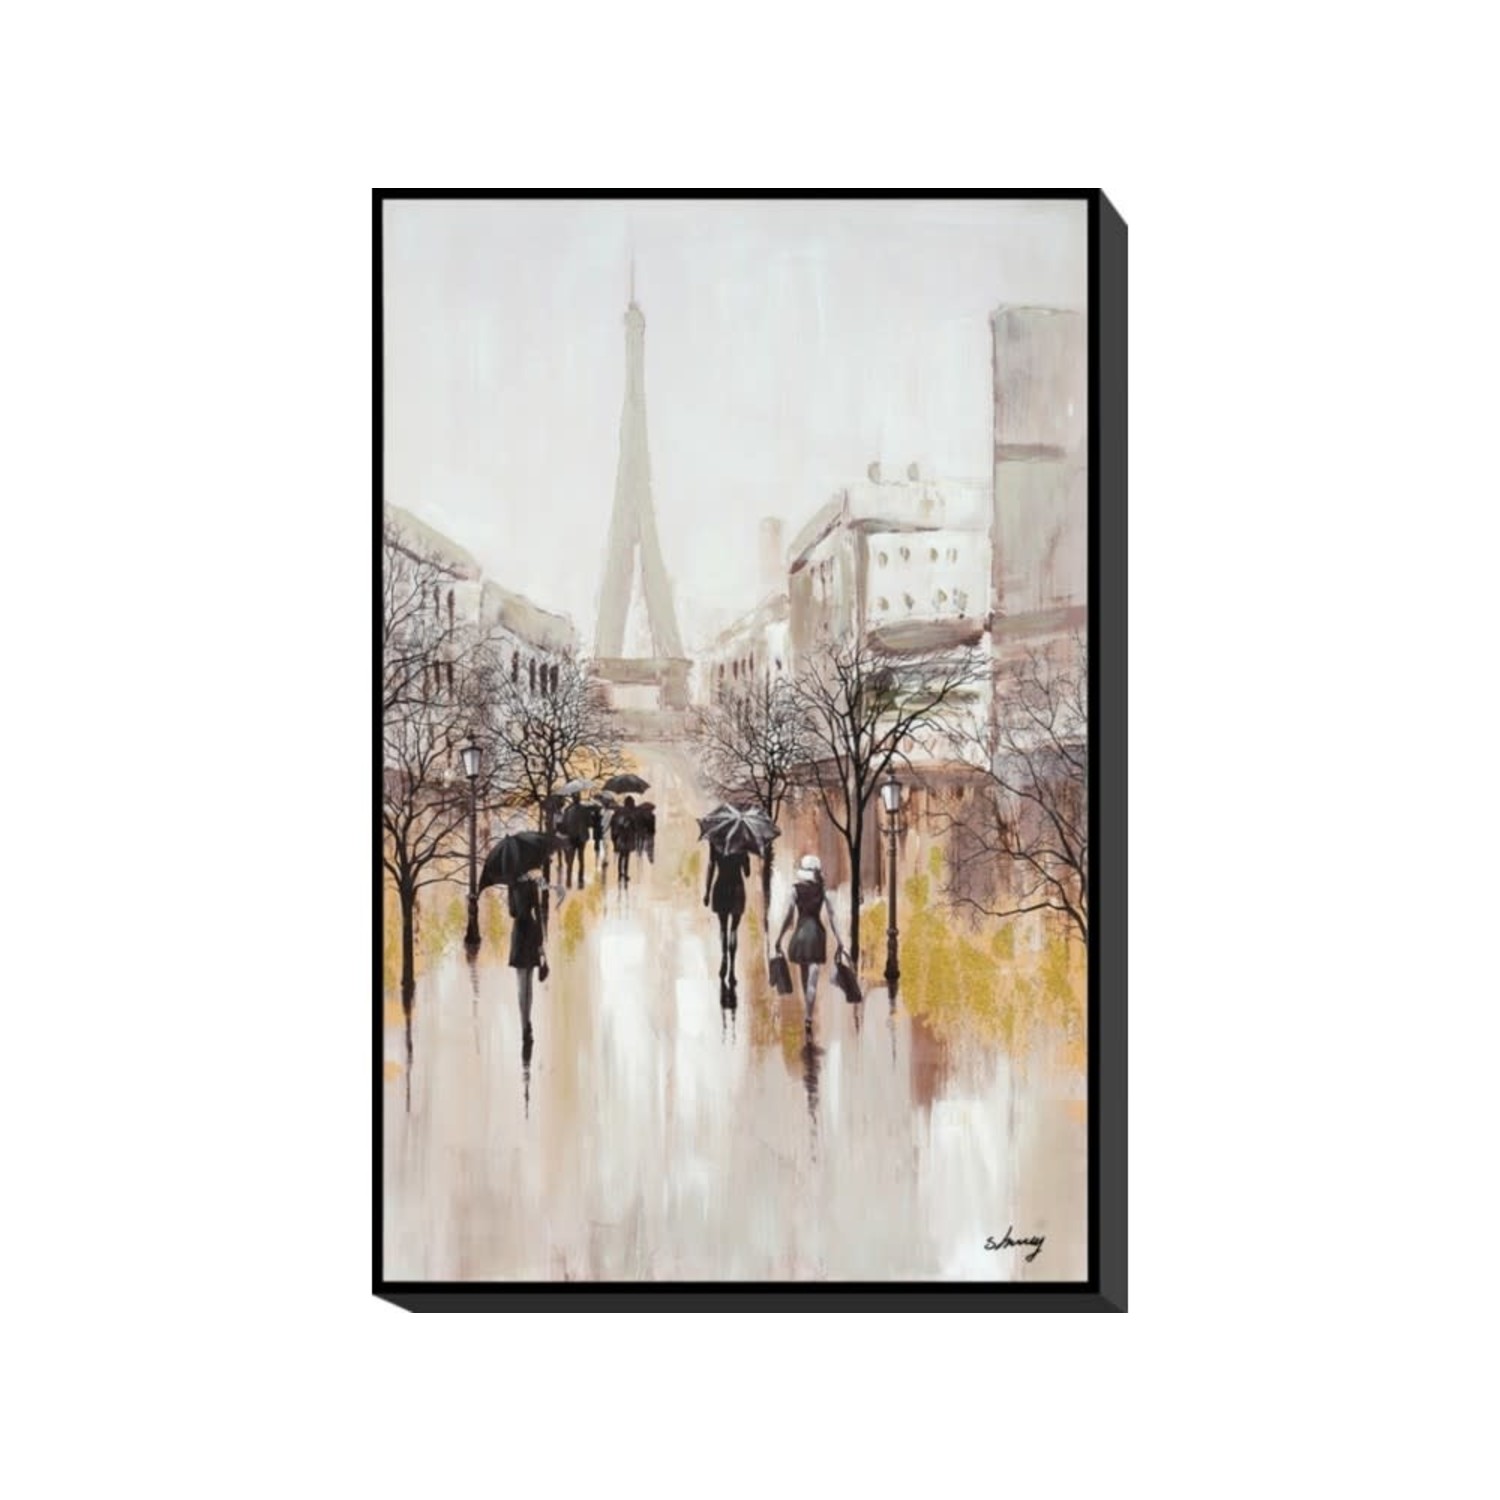 Concentratie Voorouder de ober Canvas schilderij Parijs in frame 120x80cm - Eliassen.nl - Eliassen Home &  Garden Pleasure